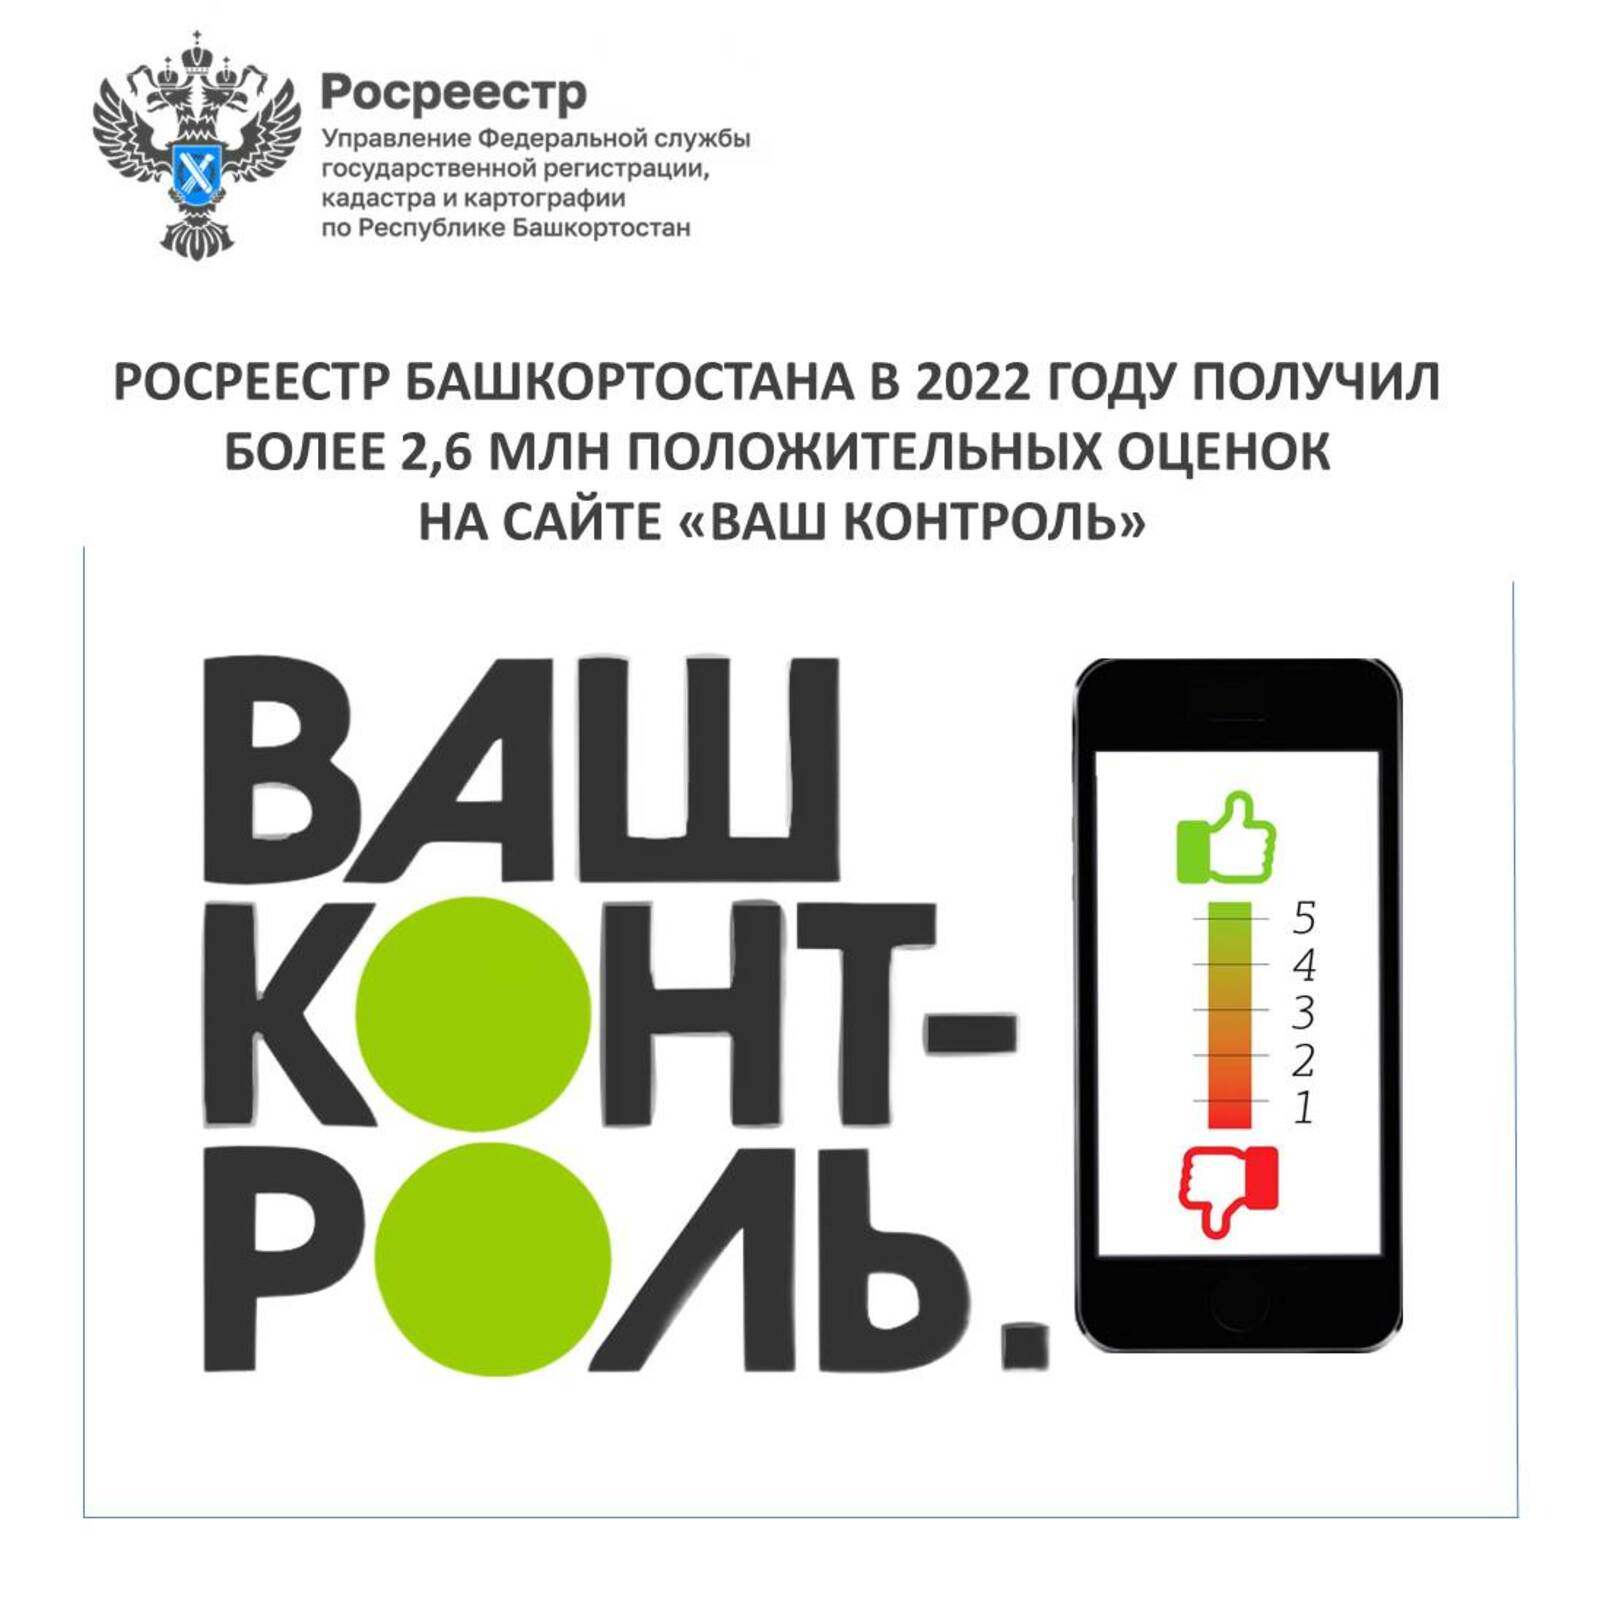 Росреестр Башкортостана в 2022 году получил более 2,6 млн положительных оценок на сайте «Ваш контроль»